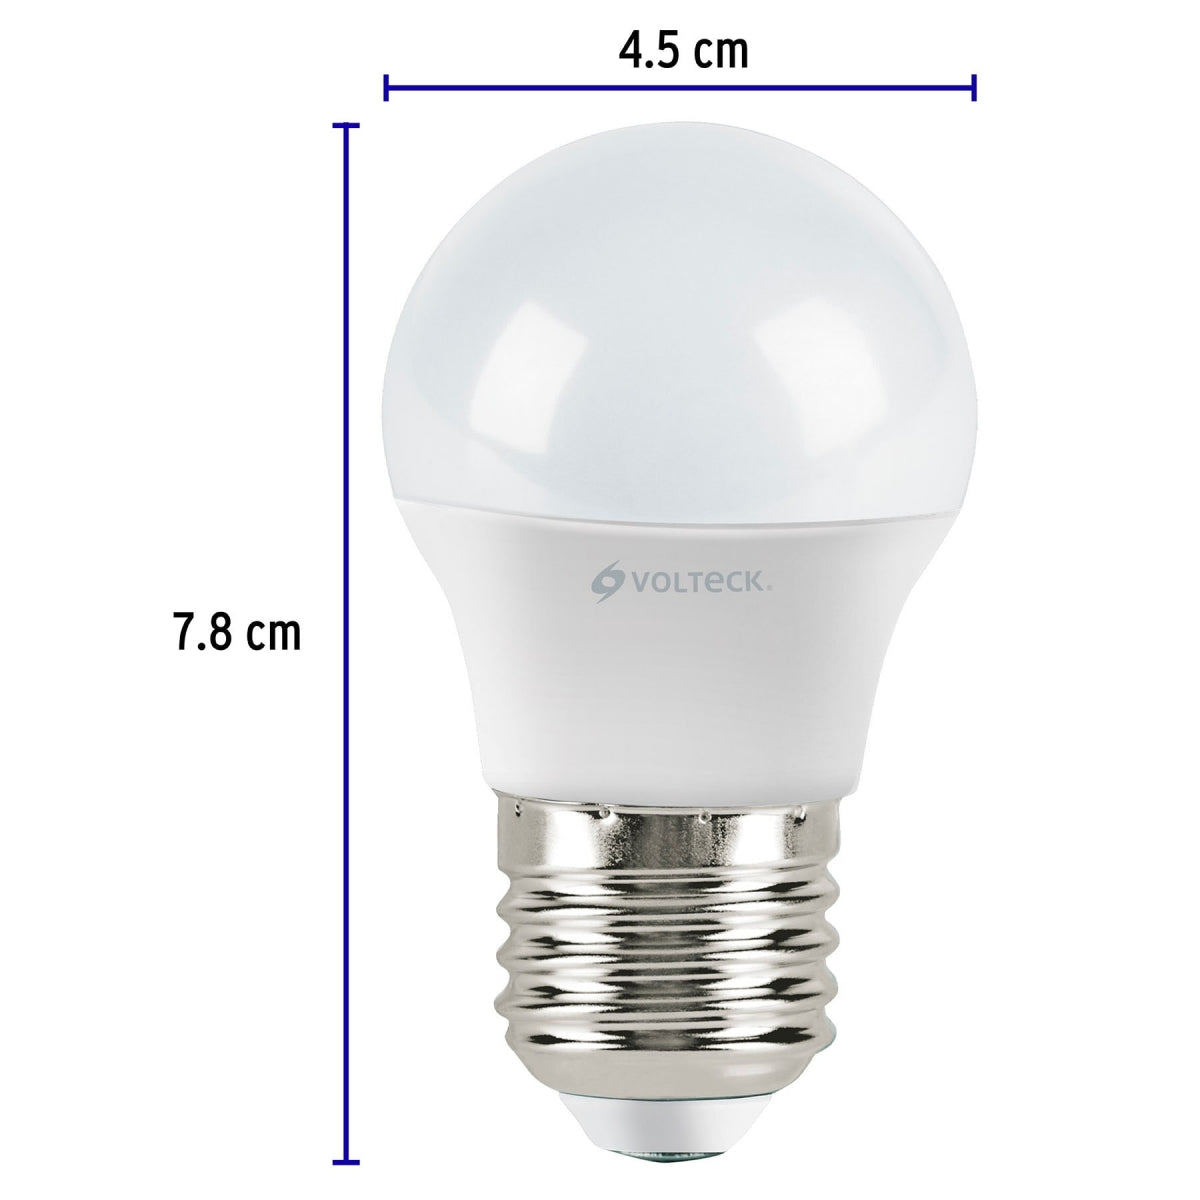 Foco LED 3W (equivalente 25W) luz cálida SKU:'46855